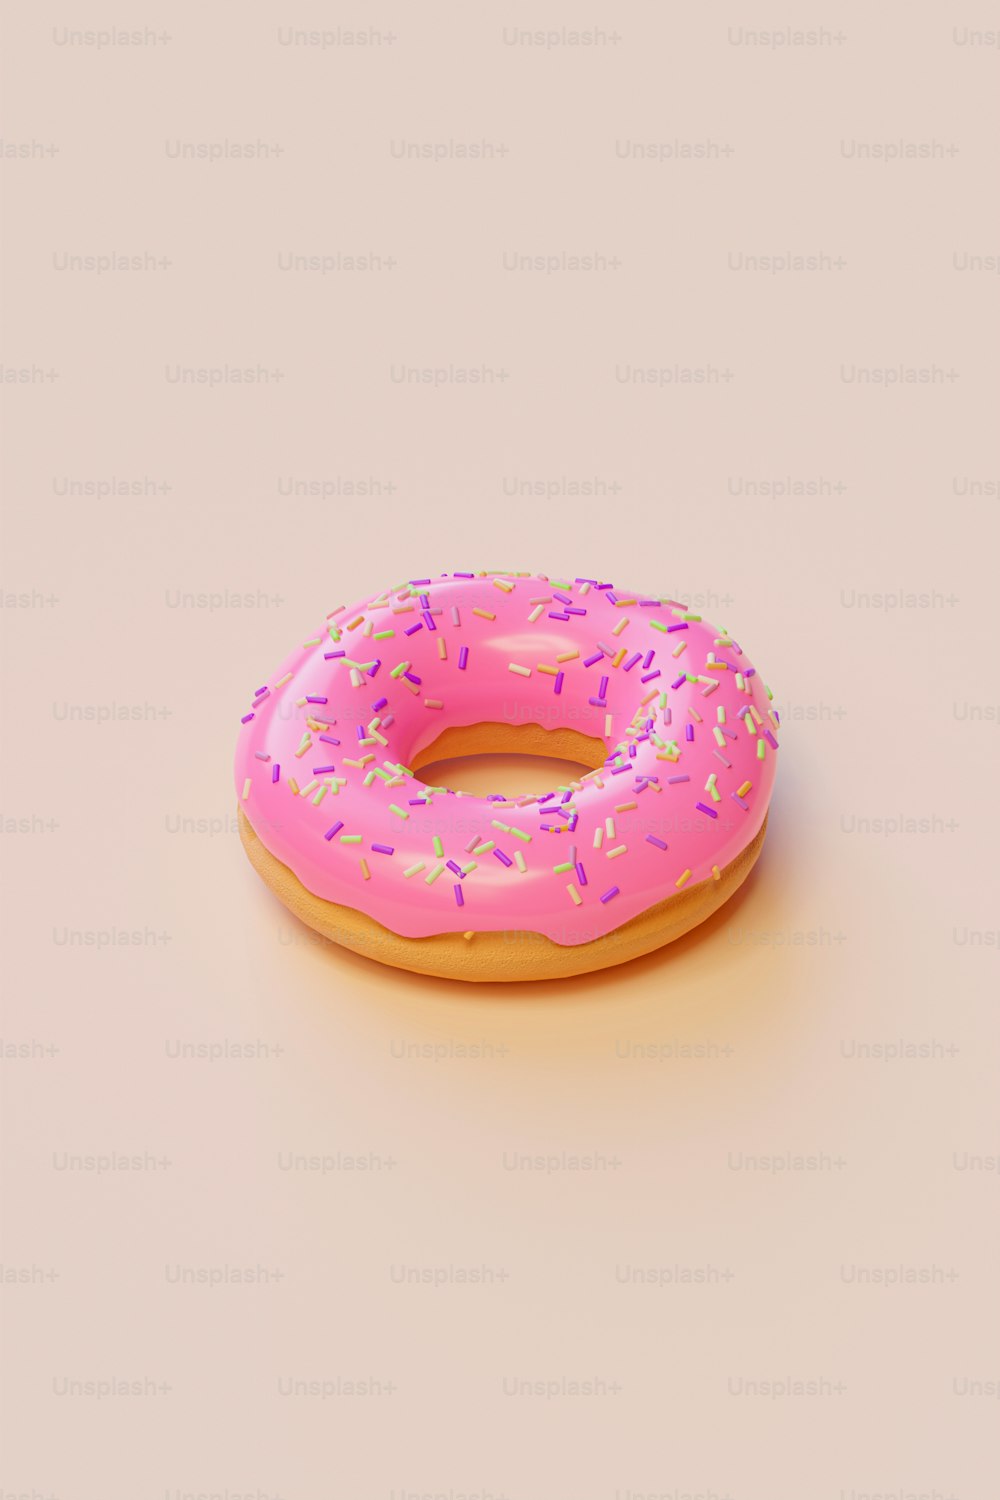 um donut rosa com polvilhos sobre ele